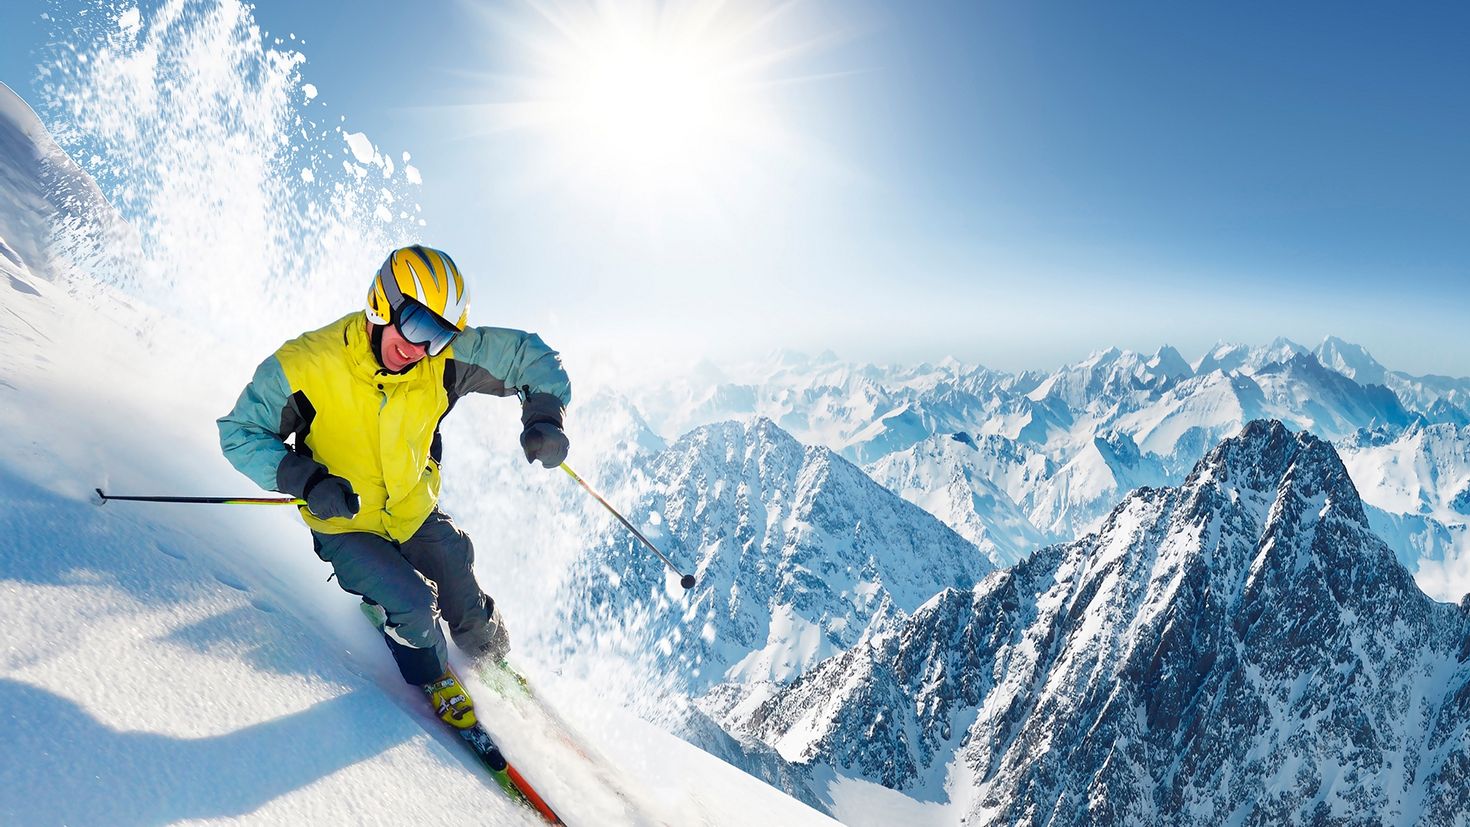 Skiing pictures. Цахкадзор фрирайд. Банско горнолыжник. Зимний спорт.